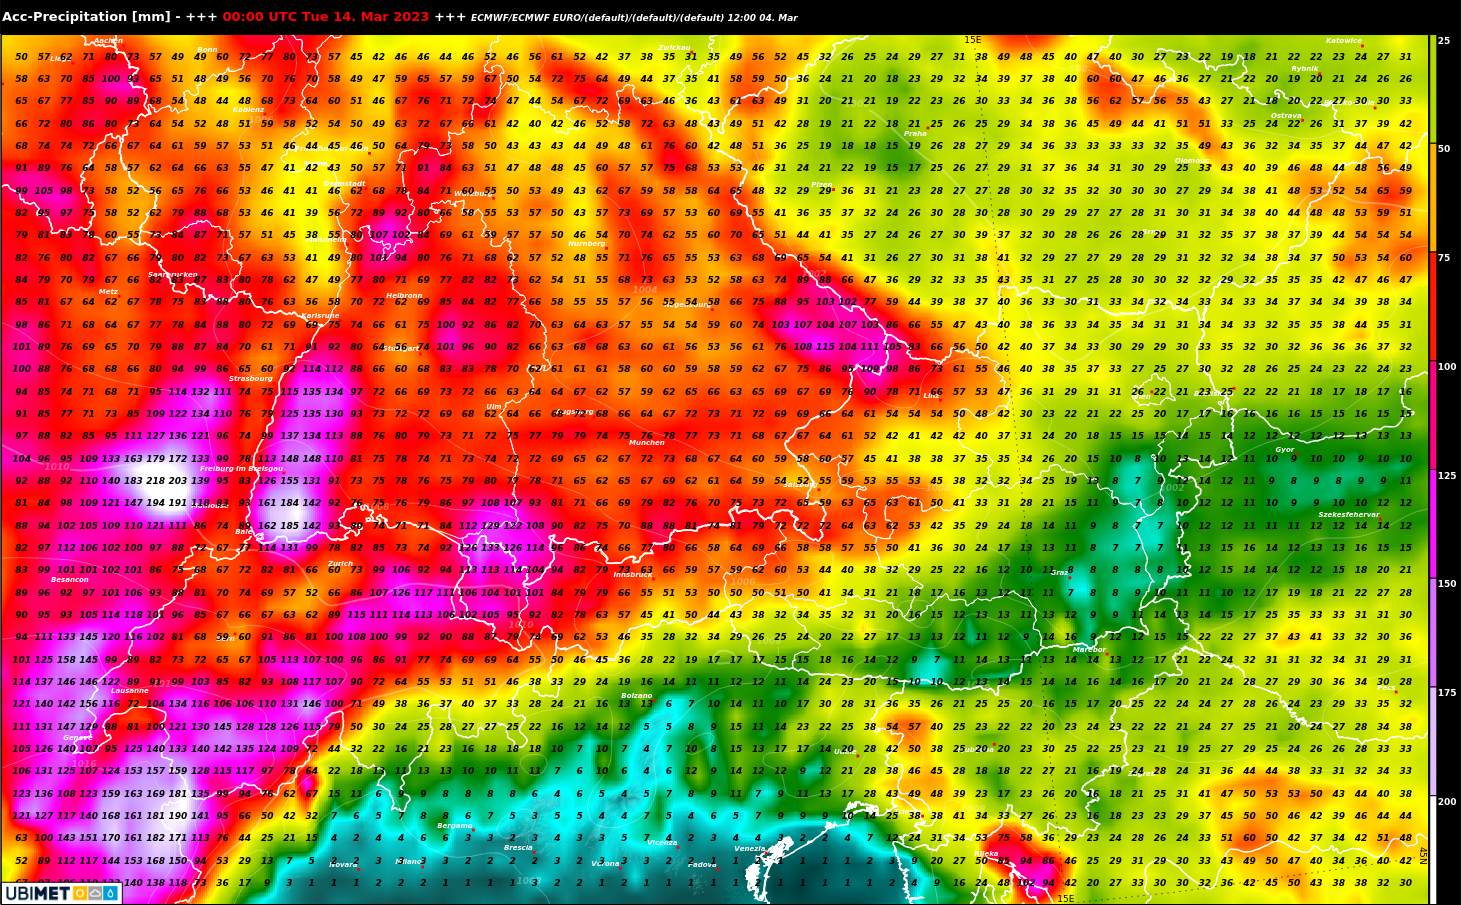 Abb. 1: Kummulierte Niederschlagssumme bis Dienstag in einer Woche nach dem europäischen Wettermodell ECMWF; Quelle: MeteoNews, Ubimet